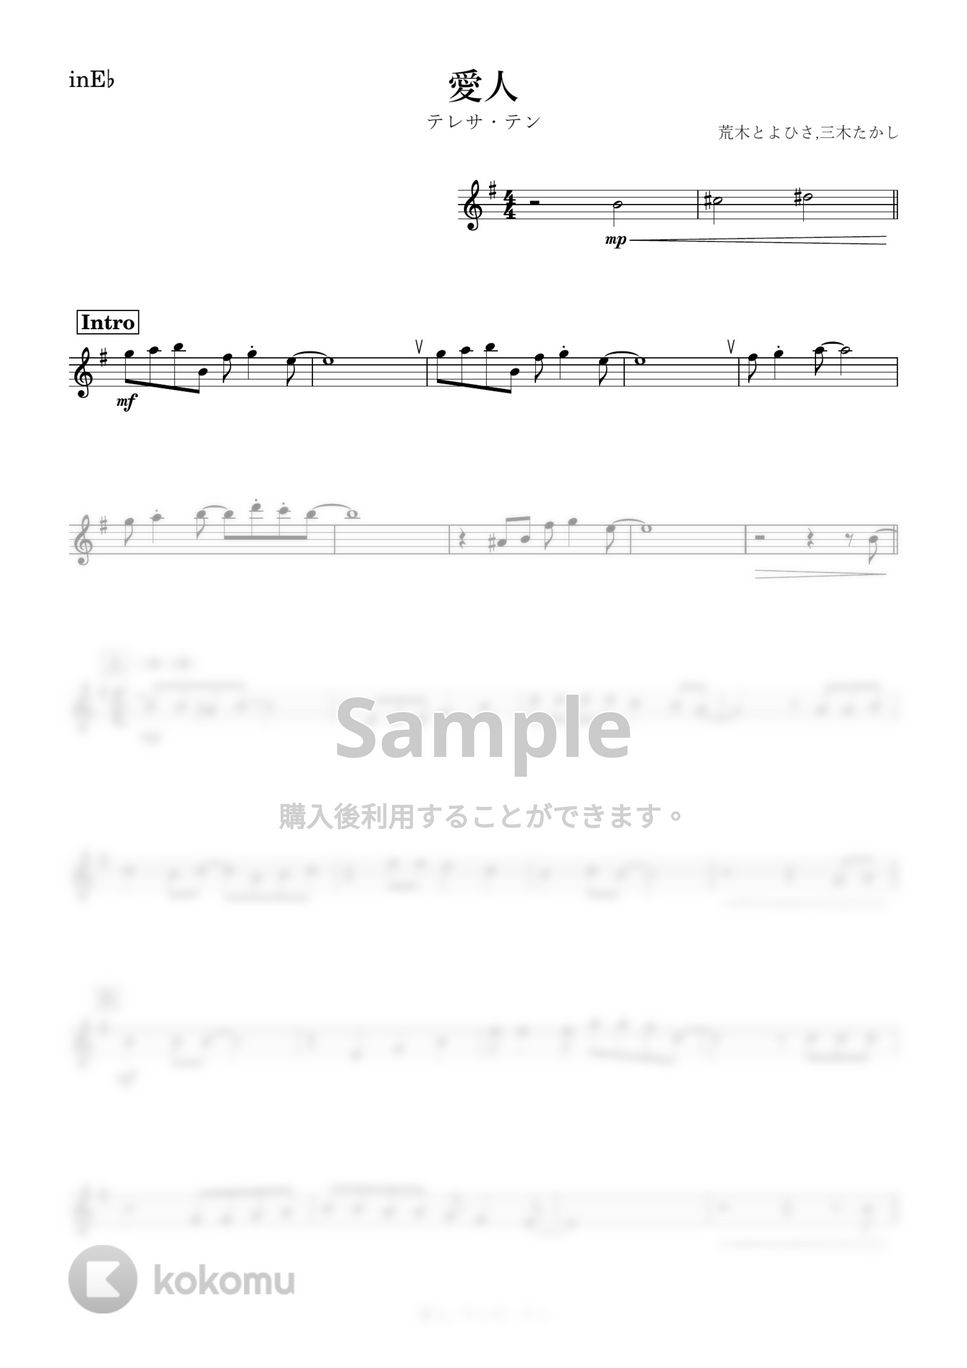 テレサ・テン - 愛人 (E♭) by kanamusic